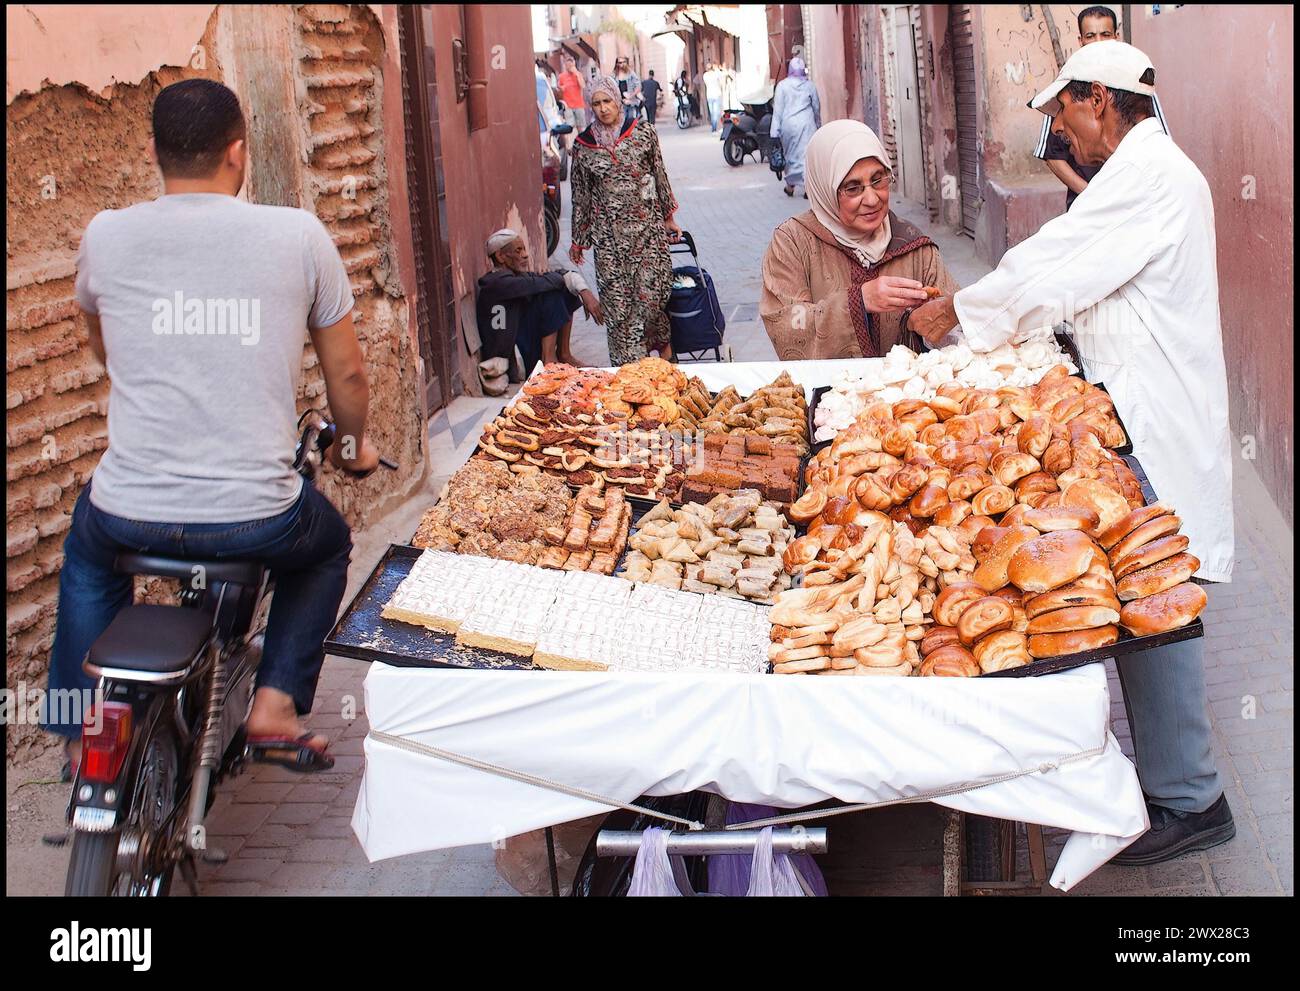 Una donna compra qualcosa di dolce in una strada vendendo nella medina di Marrakech in Marocco. fotografia vvbvanbree Foto Stock